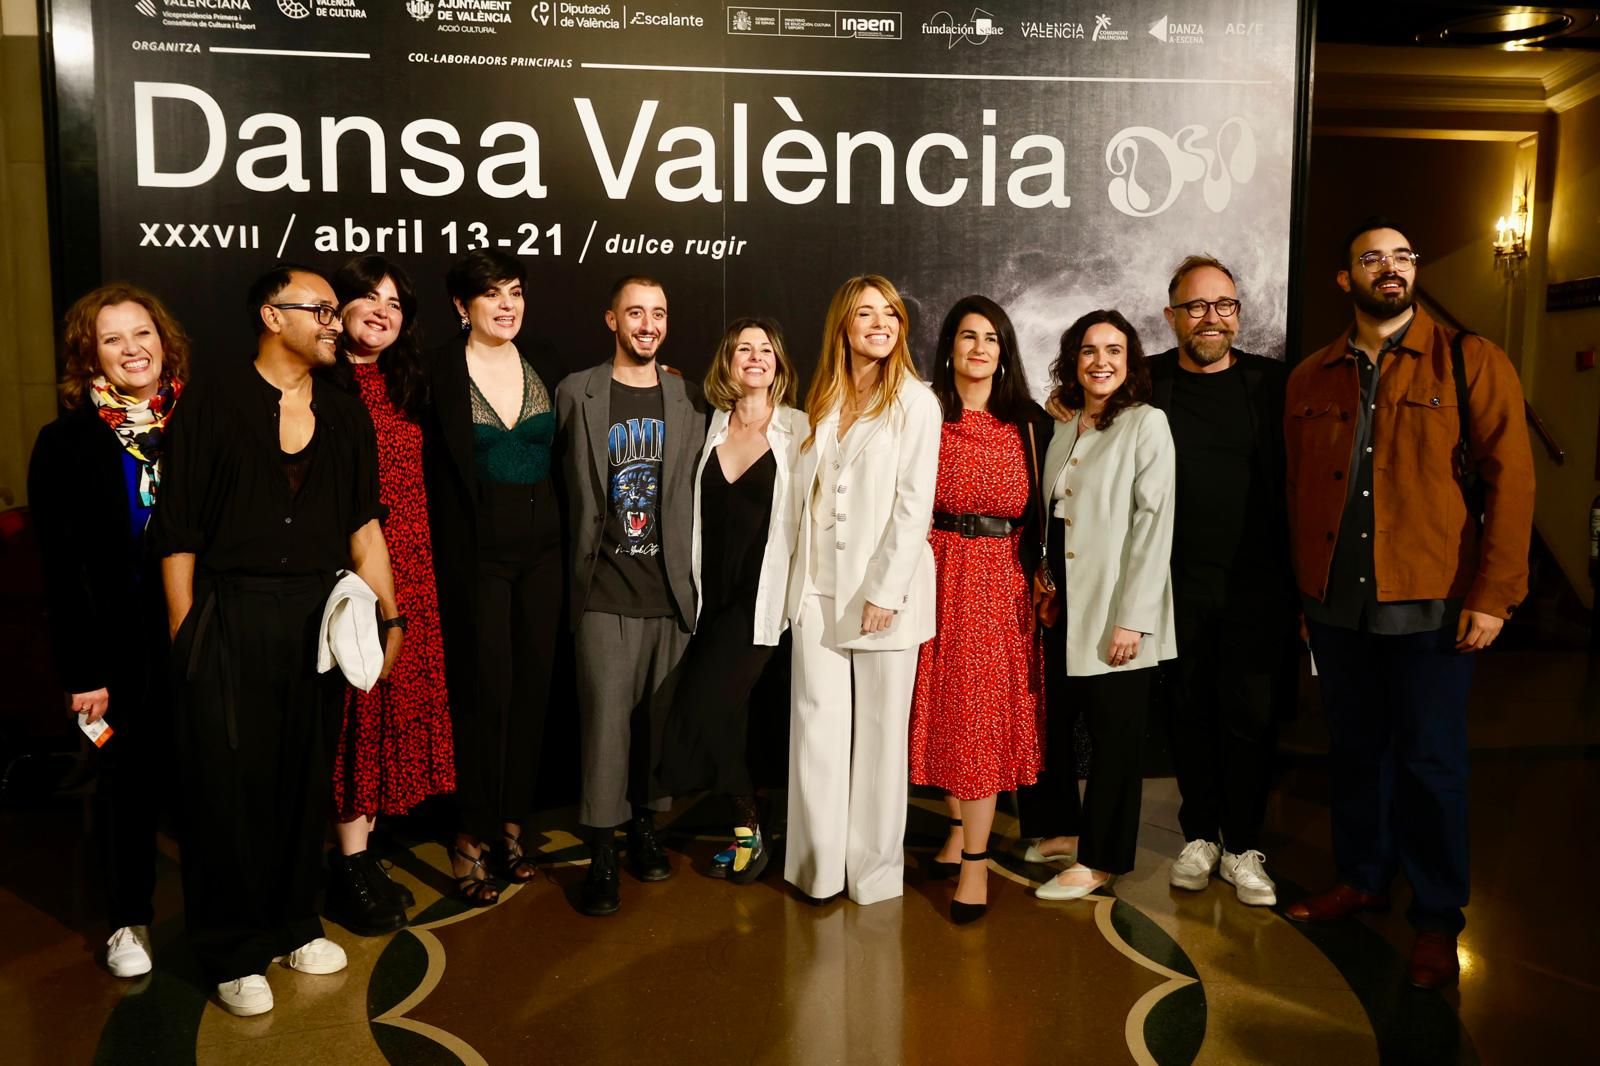 El festival Dansa València inicia su 37ª edición